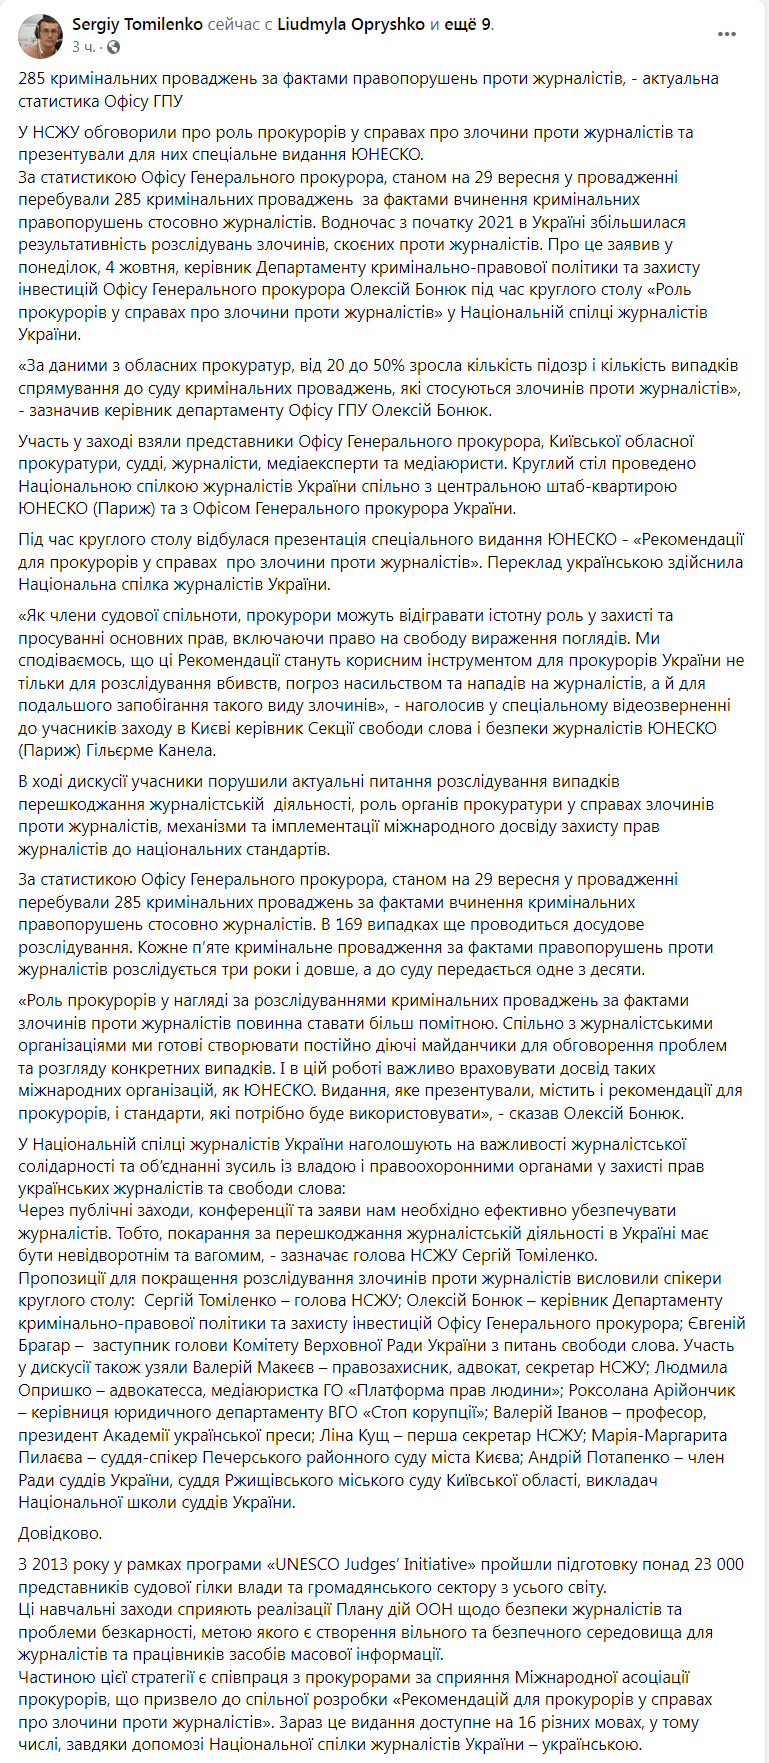 Скриншот из Фейсбука главы НСЖУ Сергея Томиленко